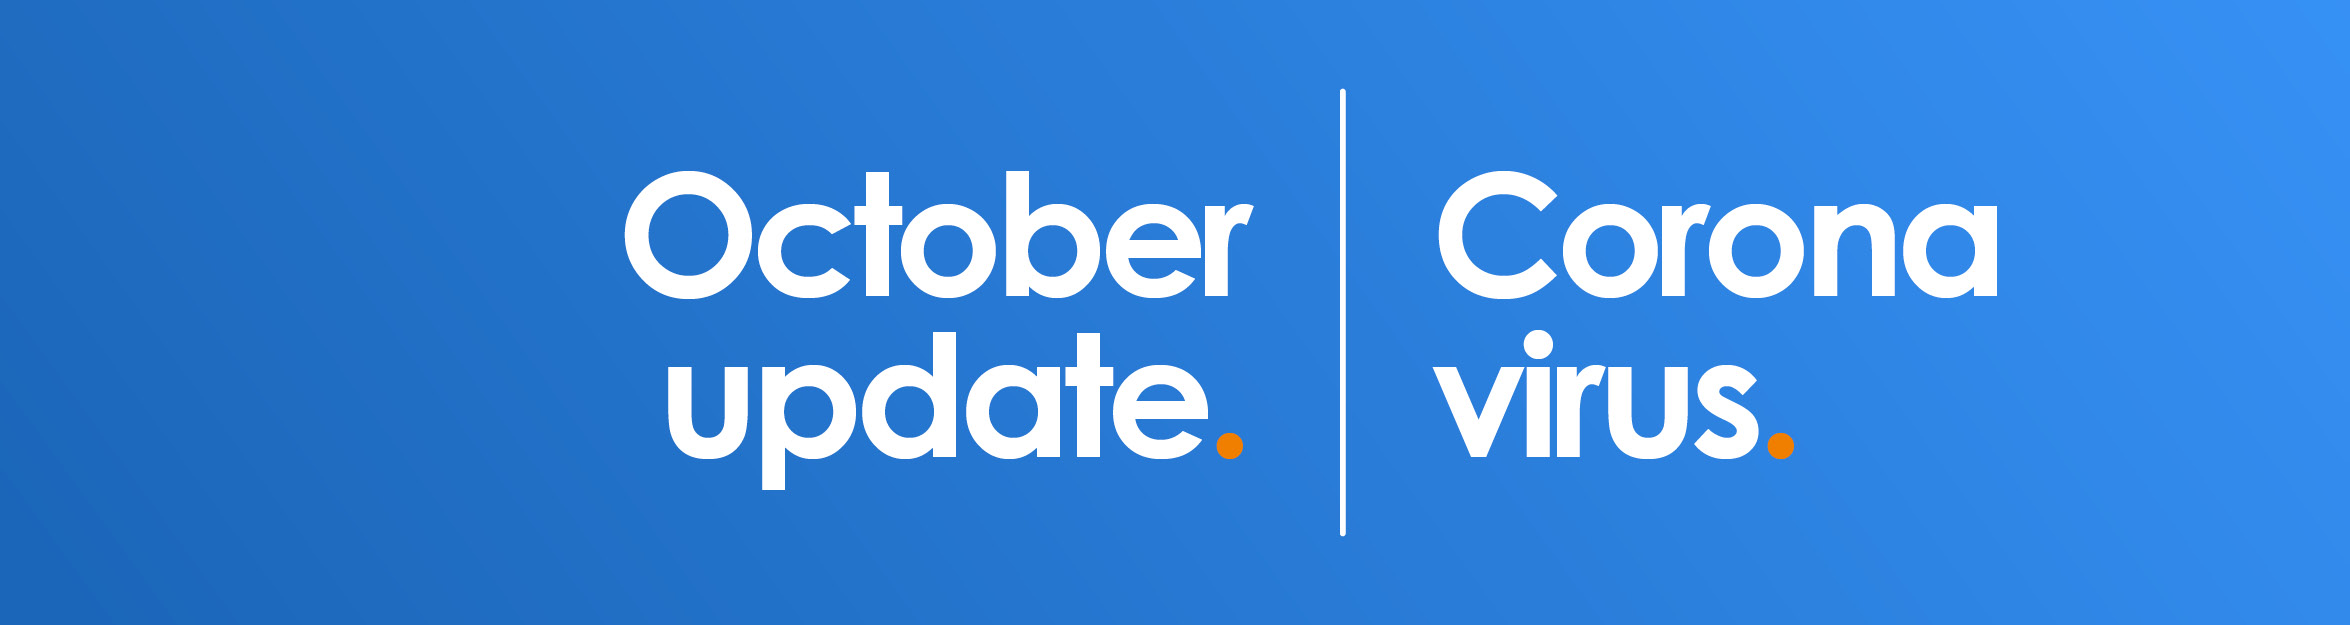 Coronavirus October update